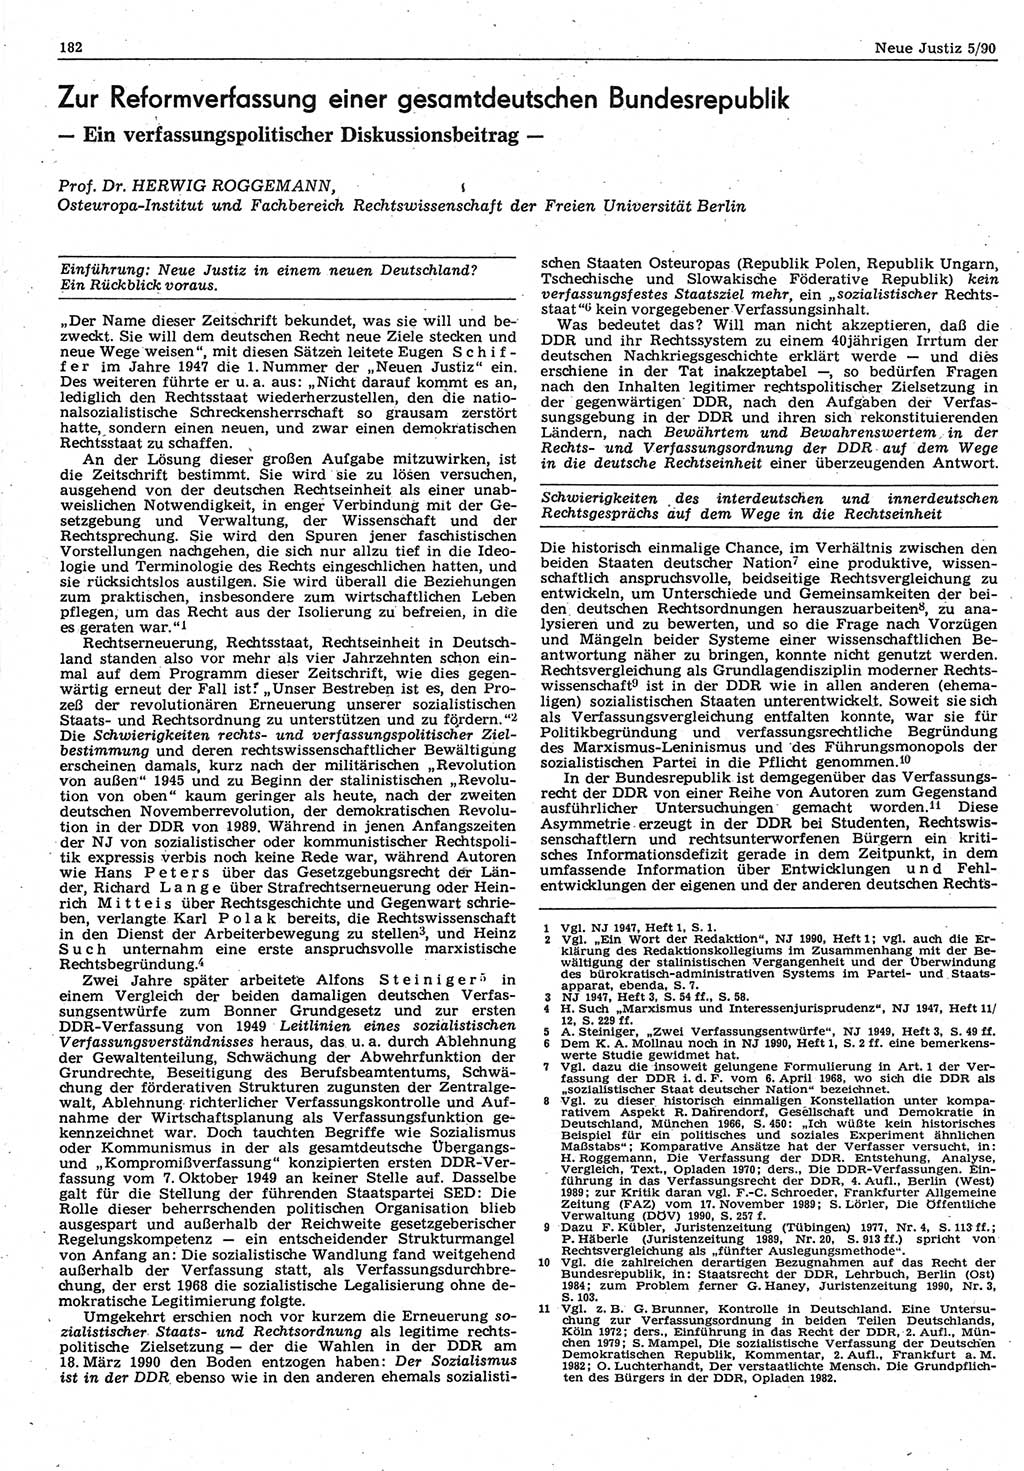 Neue Justiz (NJ), Zeitschrift für Rechtsetzung und Rechtsanwendung [Deutsche Demokratische Republik (DDR)], 44. Jahrgang 1990, Seite 182 (NJ DDR 1990, S. 182)